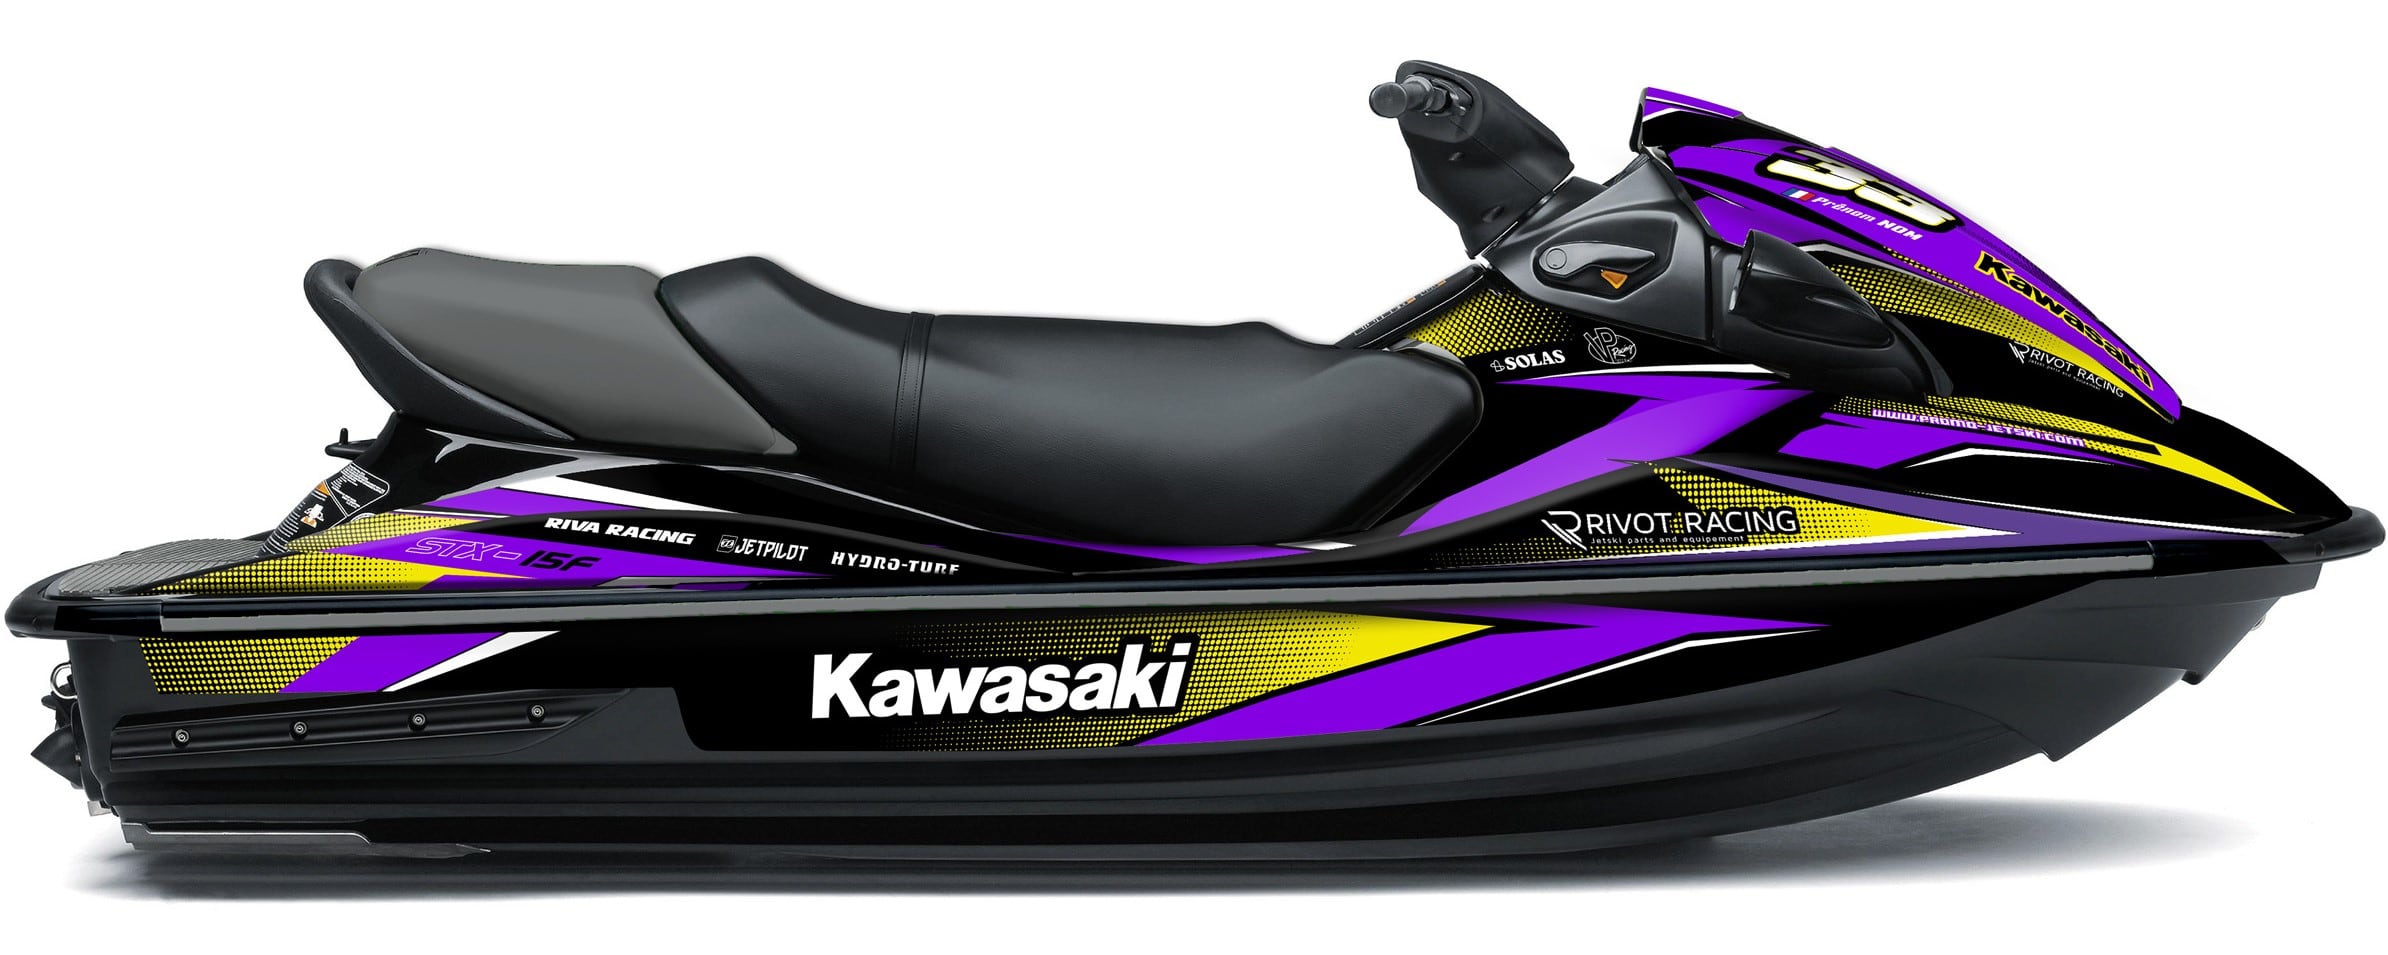 RACE Graphic Kit for Kawasaki 15F Jet Ski - KDK15FRV - Promo-jetski